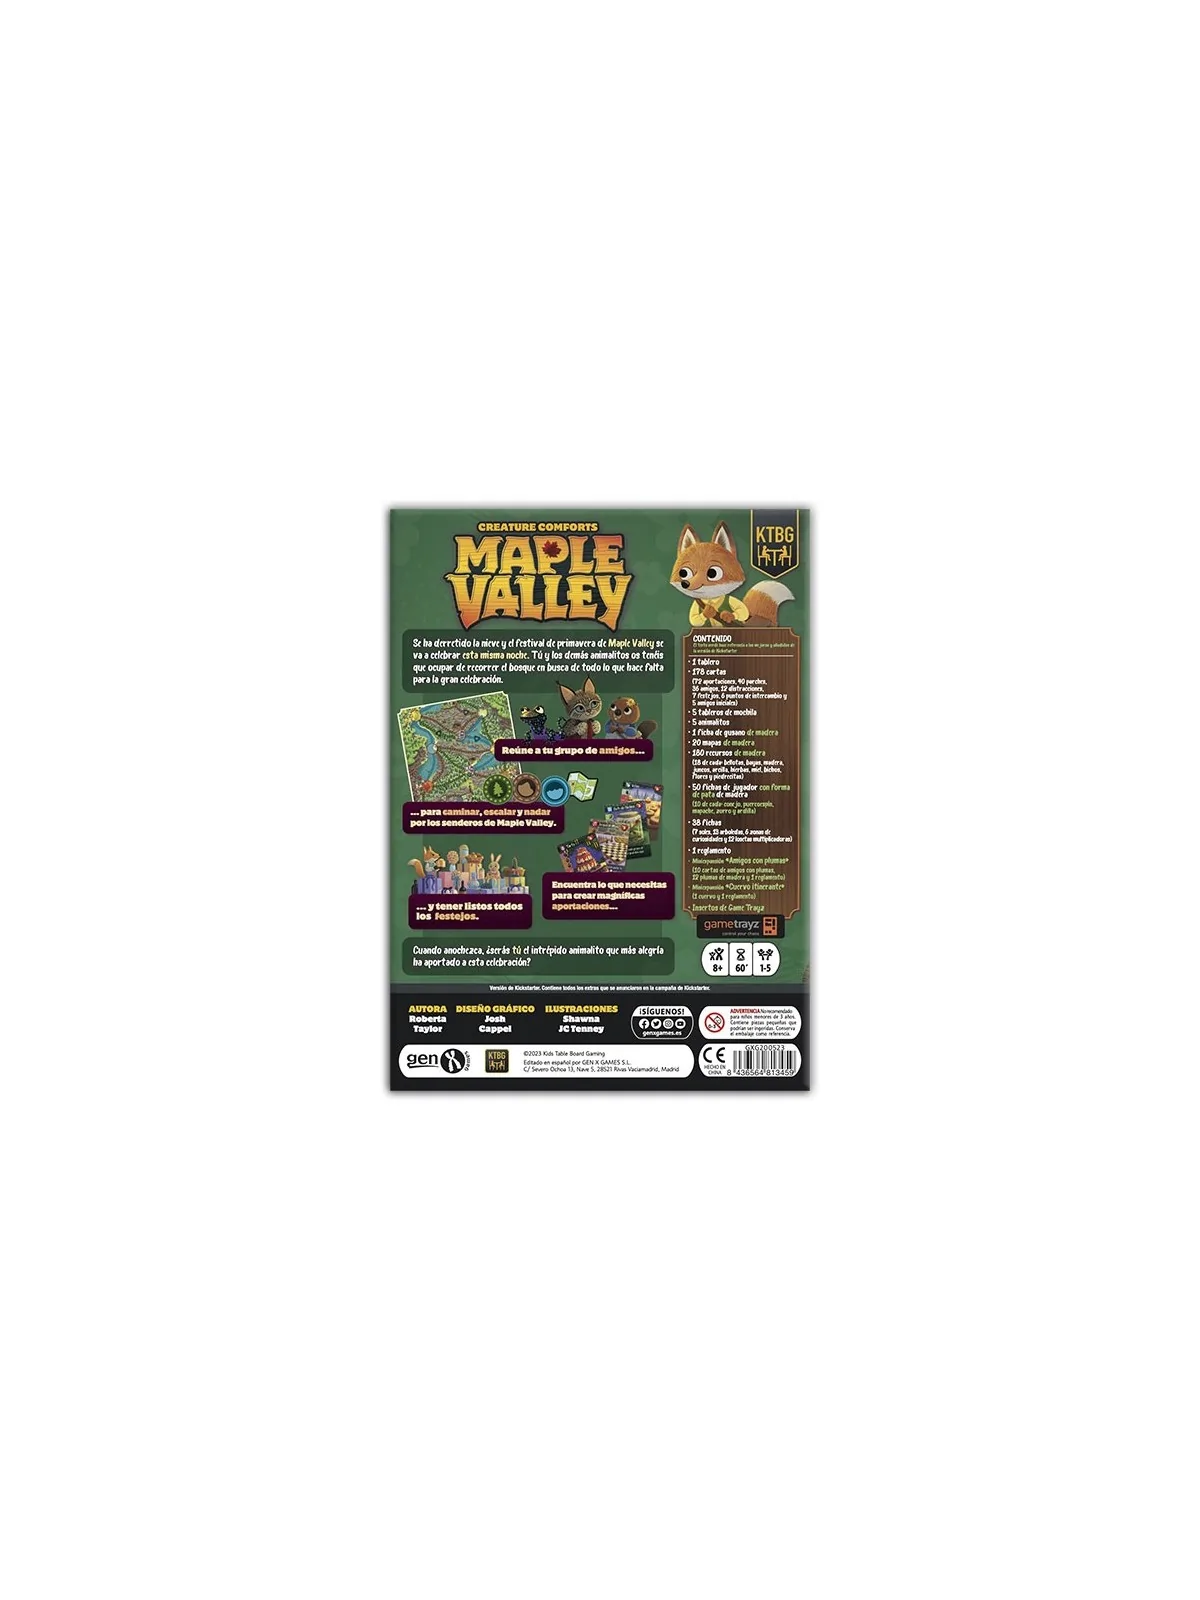 Comprar Maple Valley barato al mejor precio 54,95 € de Gen X Games